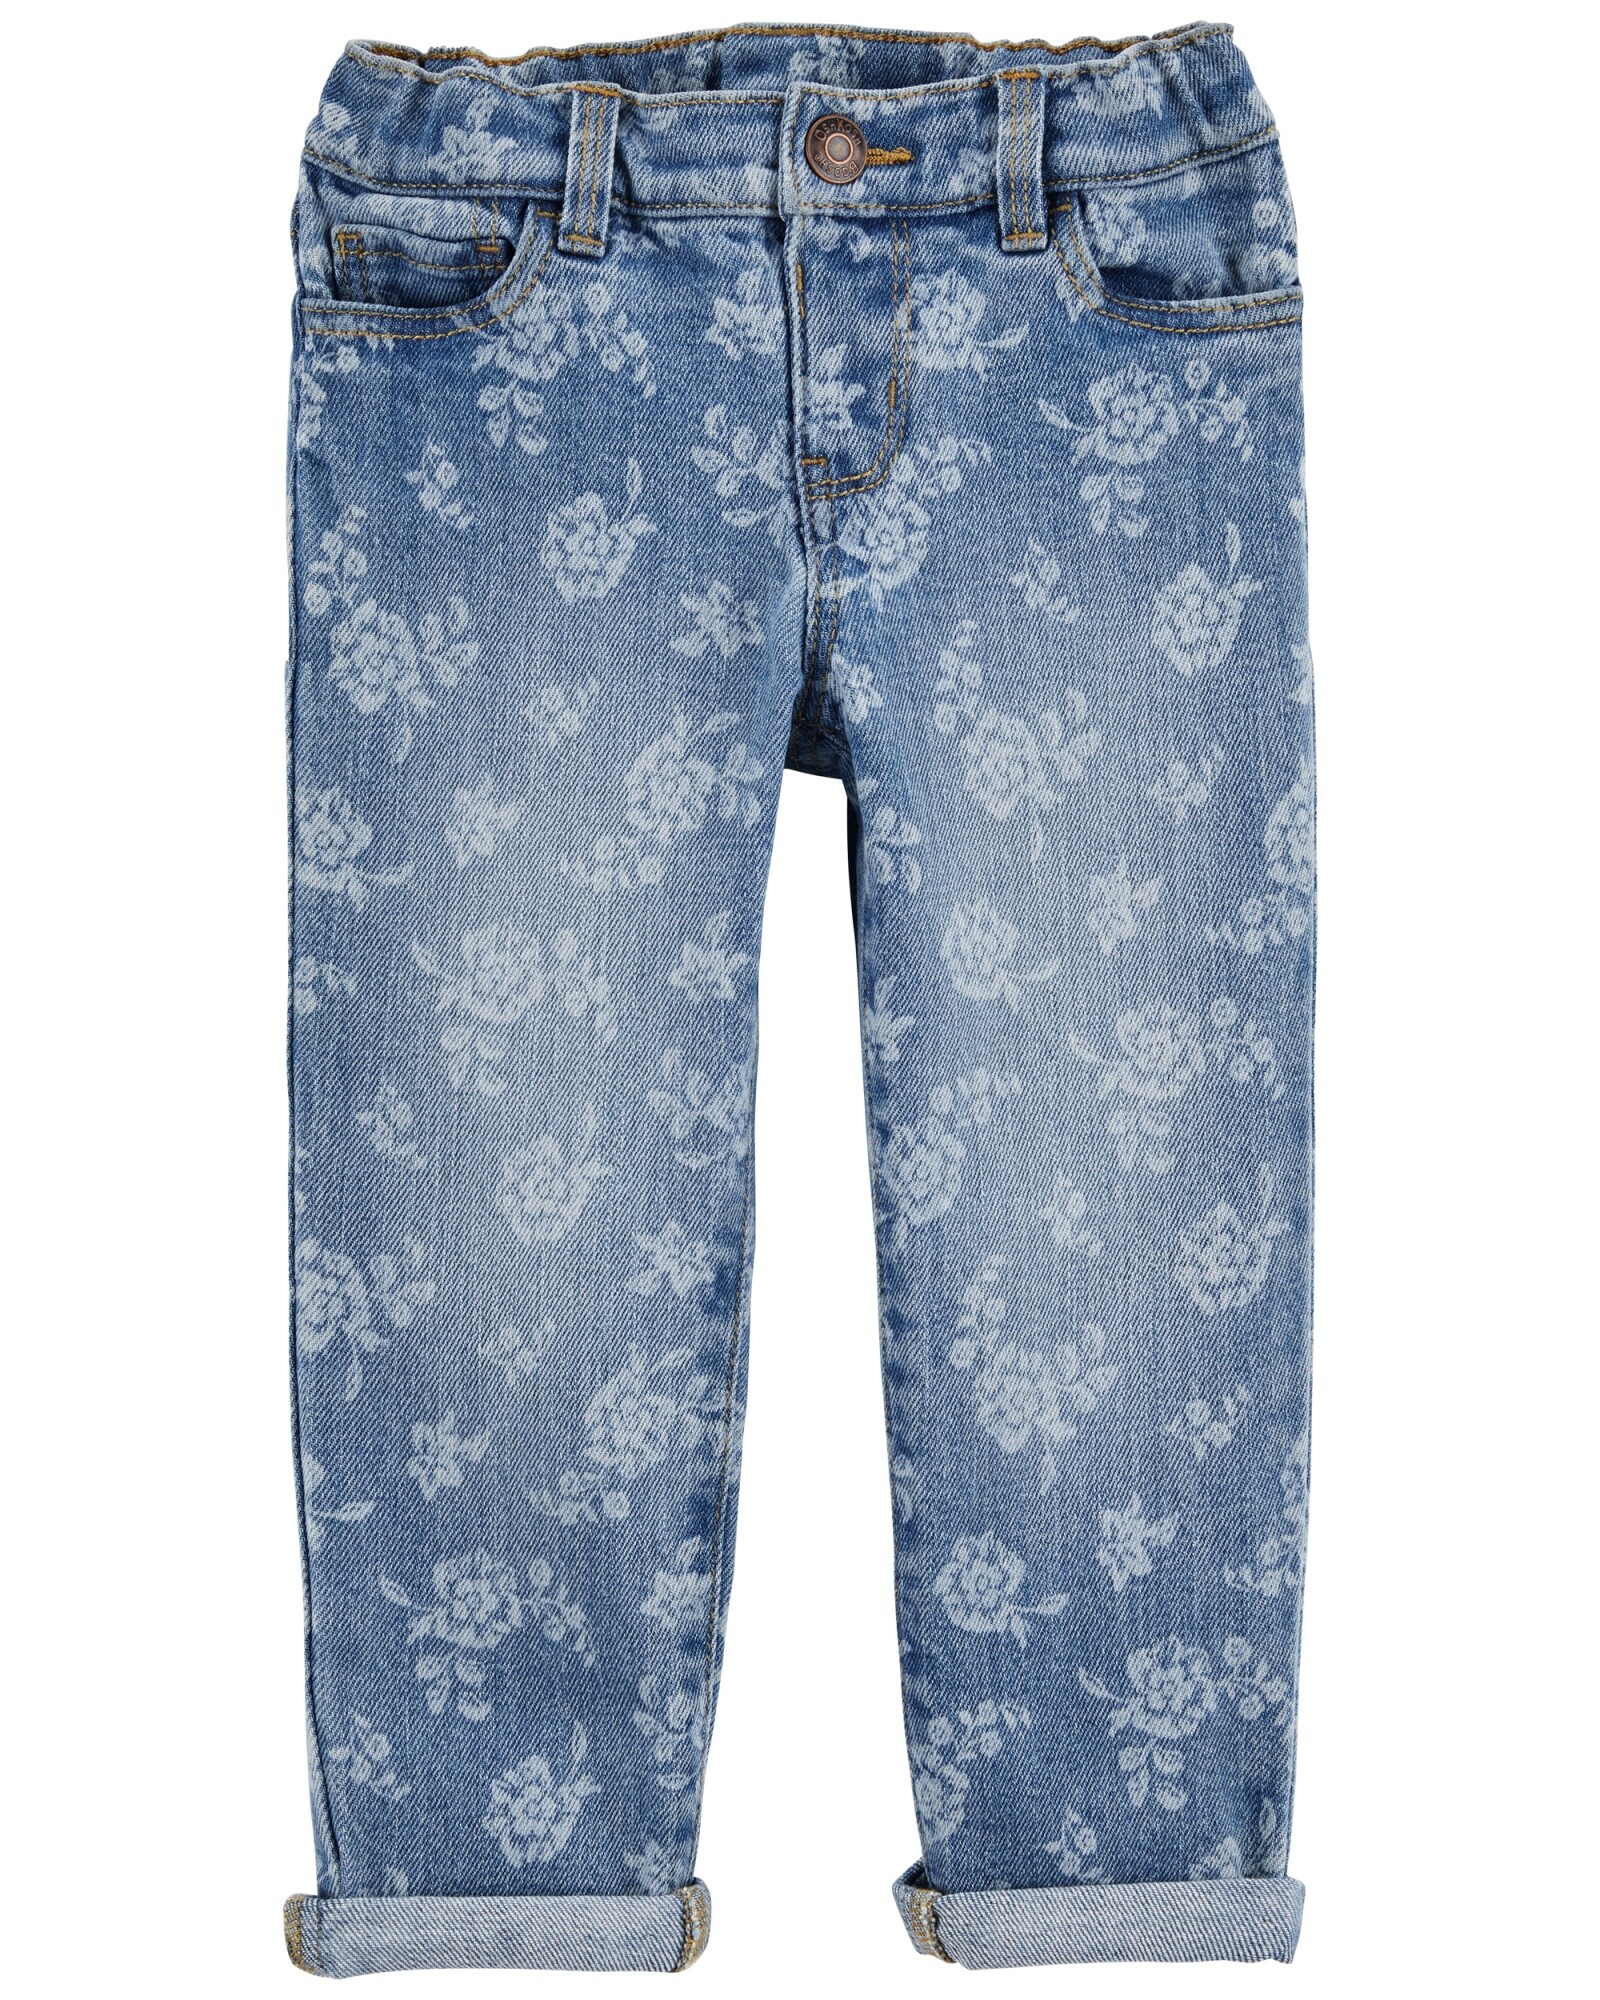 Pantalón jean ajustado diseño floral Sin color